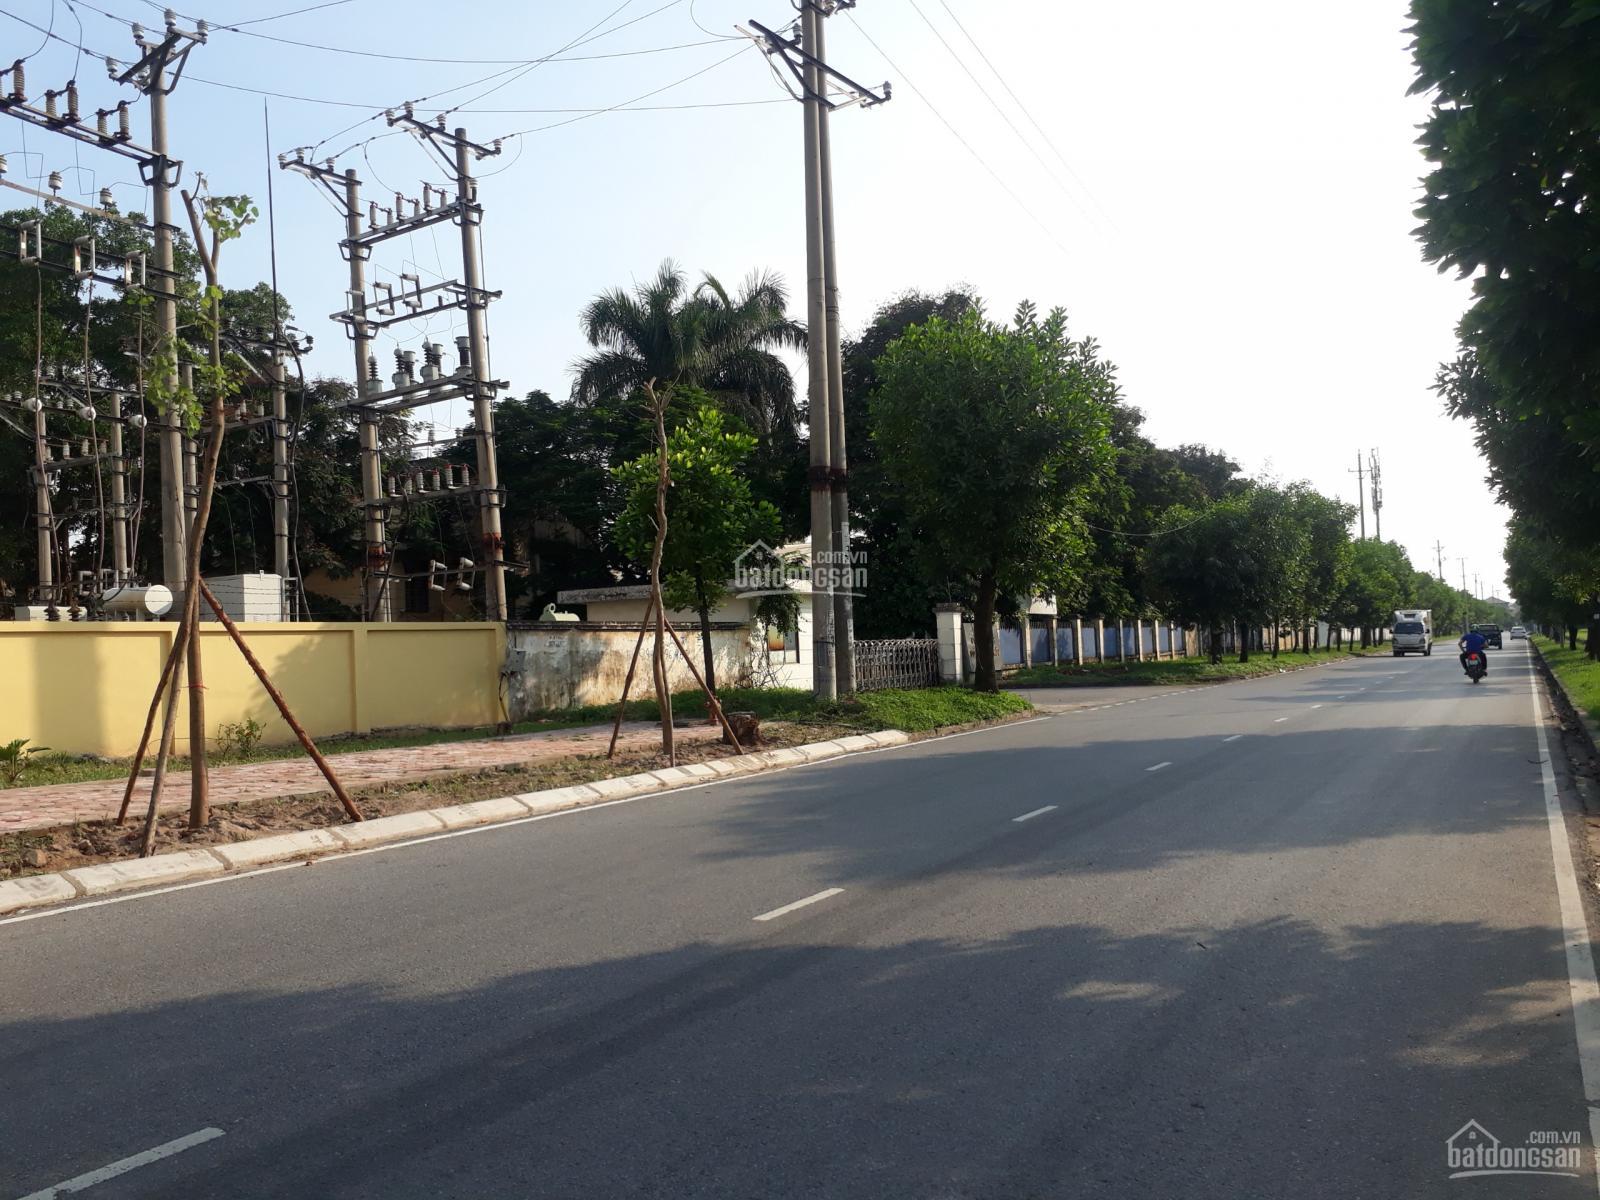 Cơ sở hạ tầng trong Khu công nghiệp Quang Minh